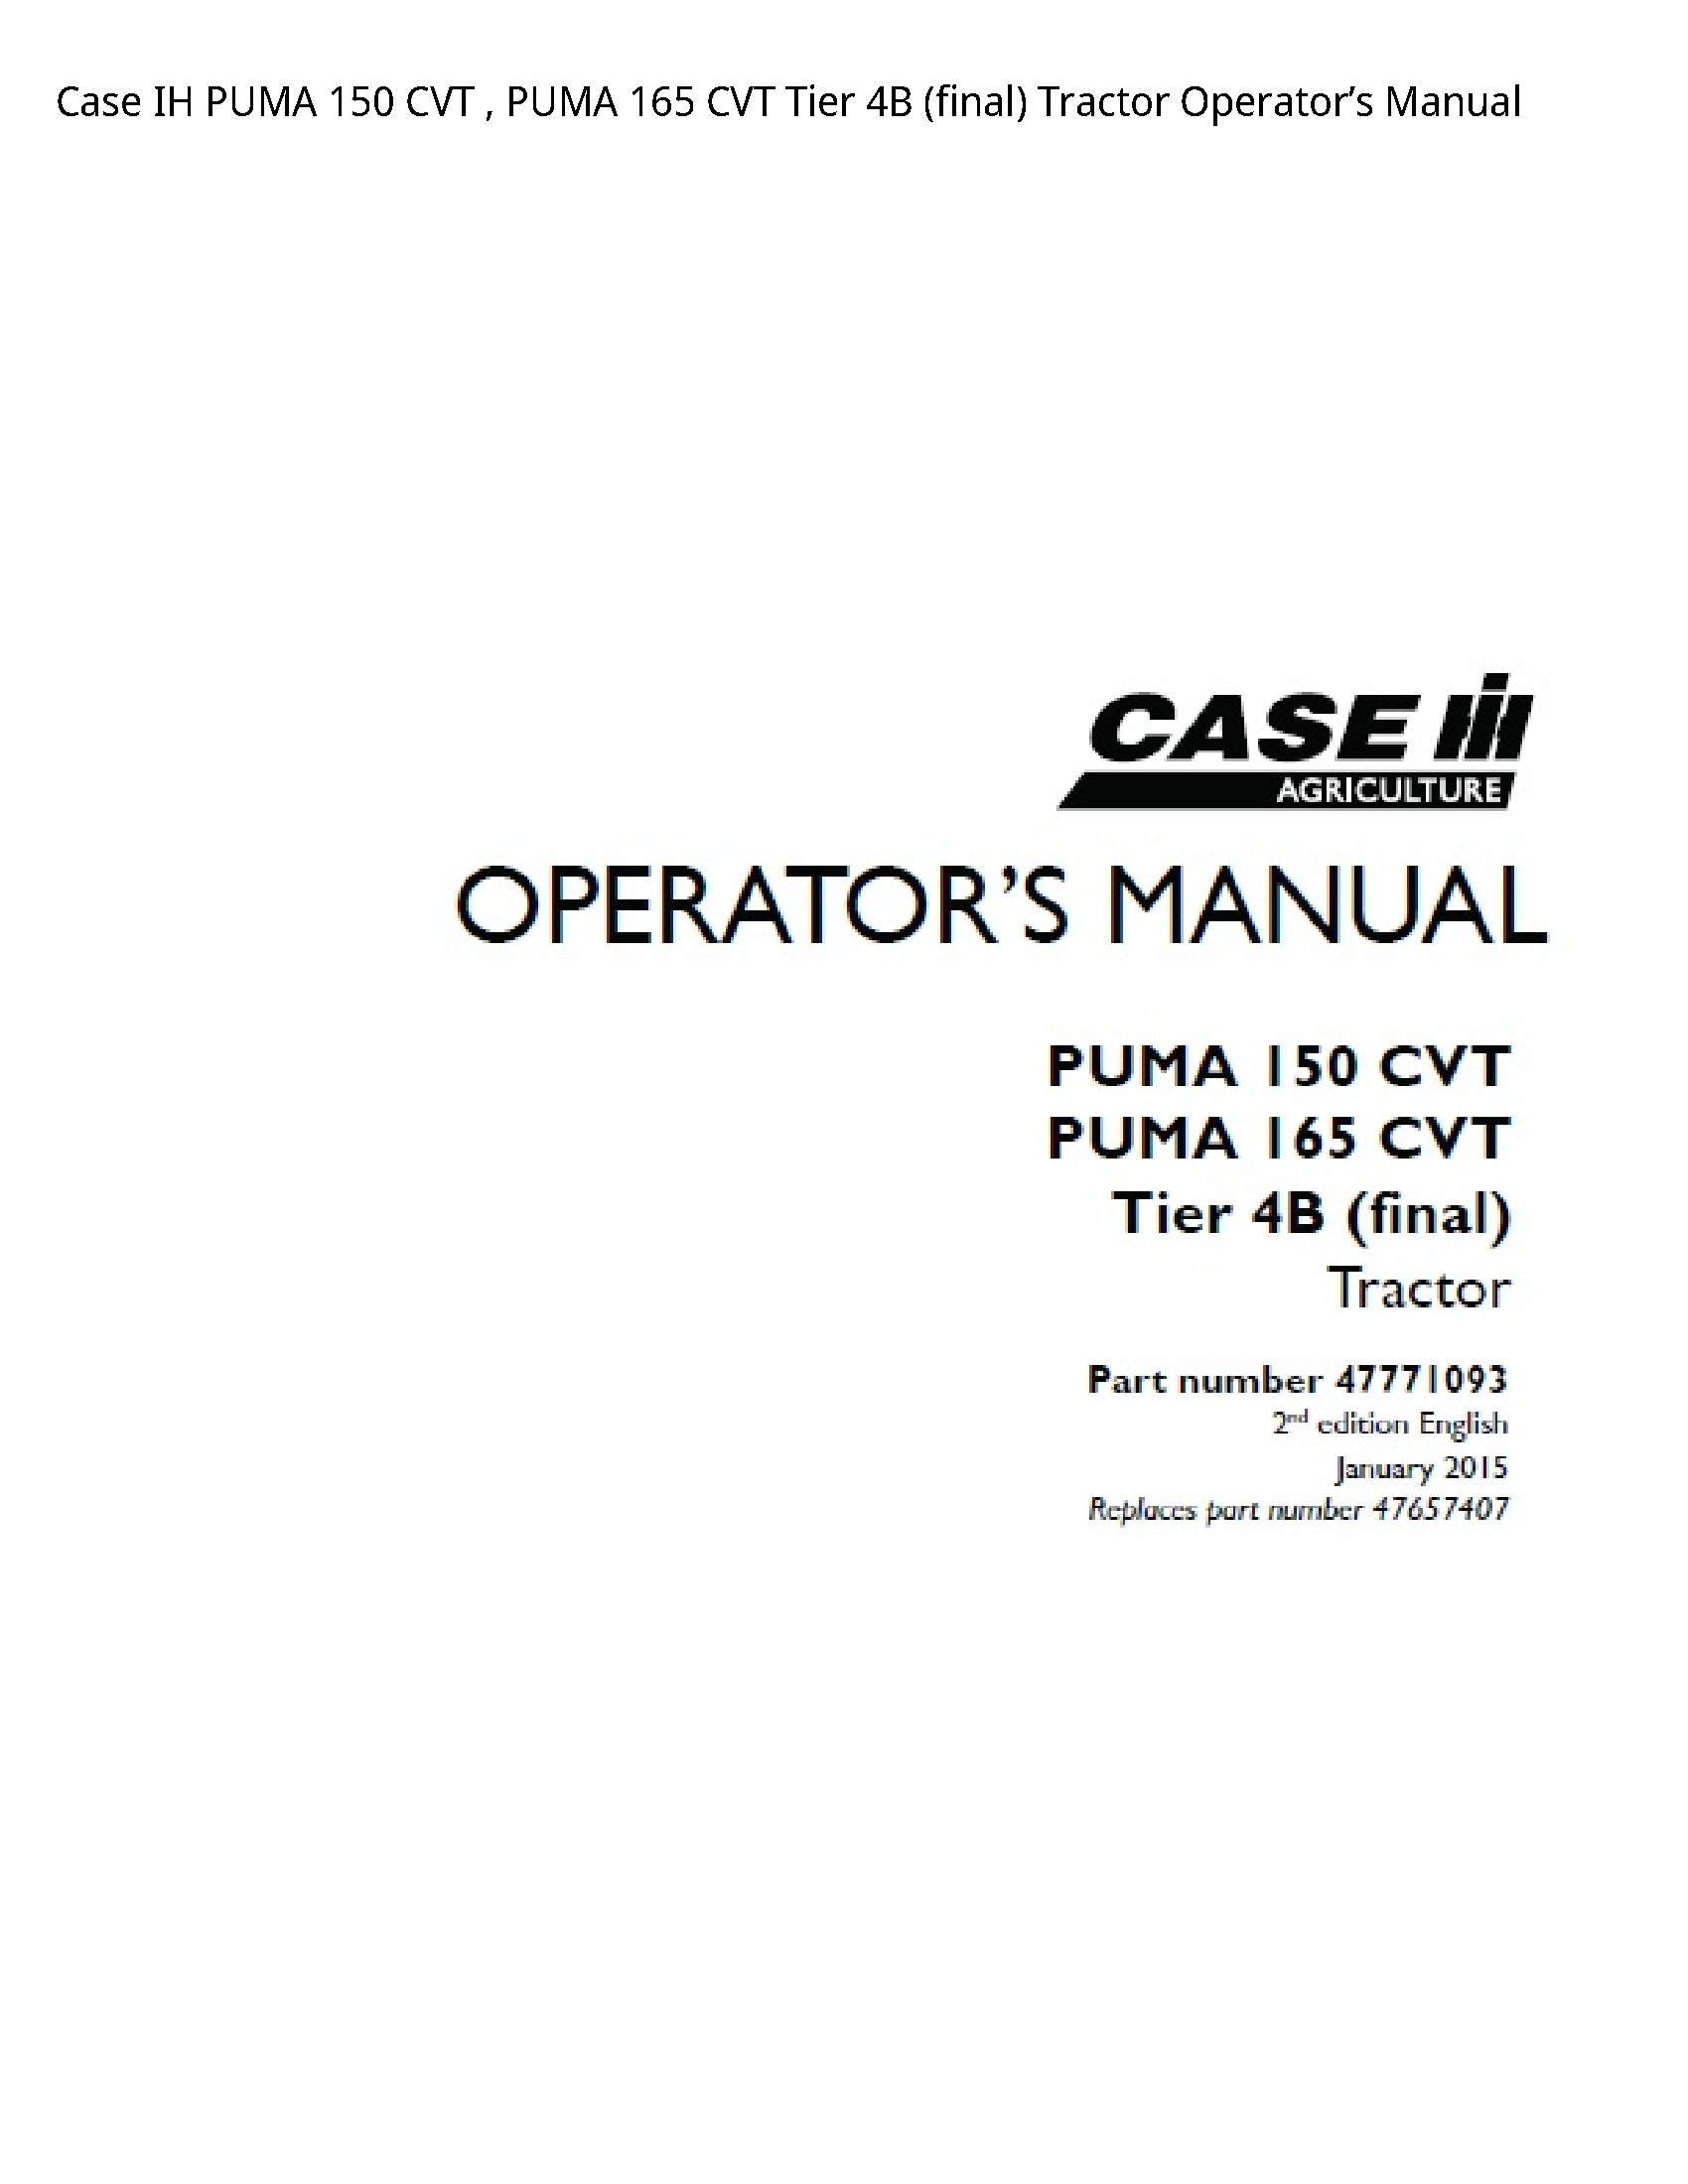 Case/Case IH 150 IH PUMA CVT PUMA CVT Tier (final) Tractor Operator’s manual